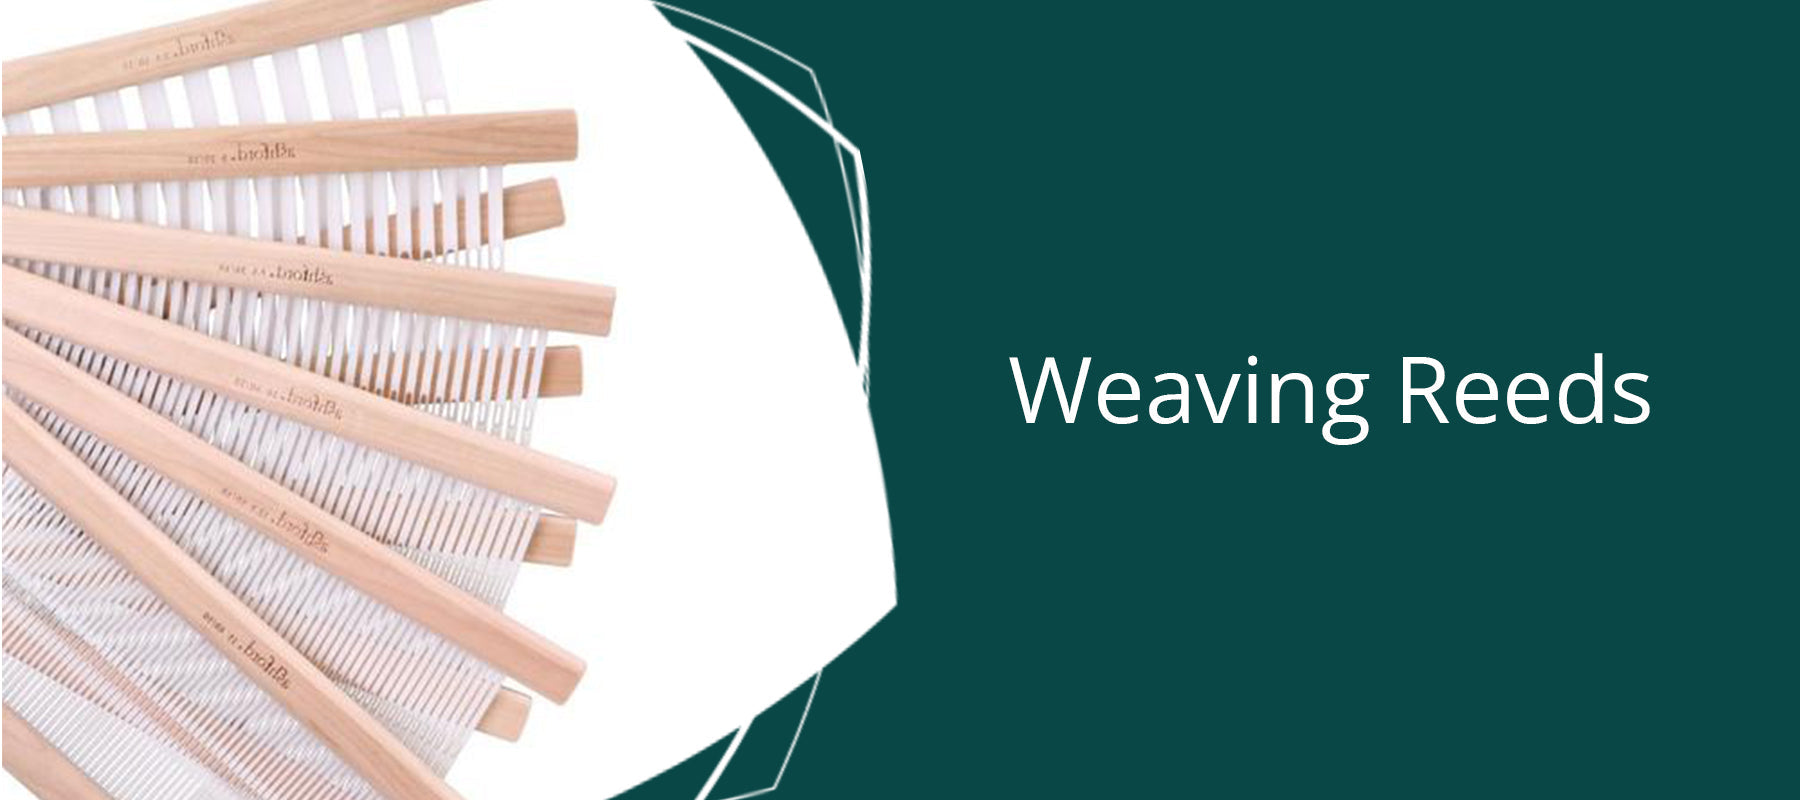 Buy Weaving Reeds Online - Thread Collective Australia